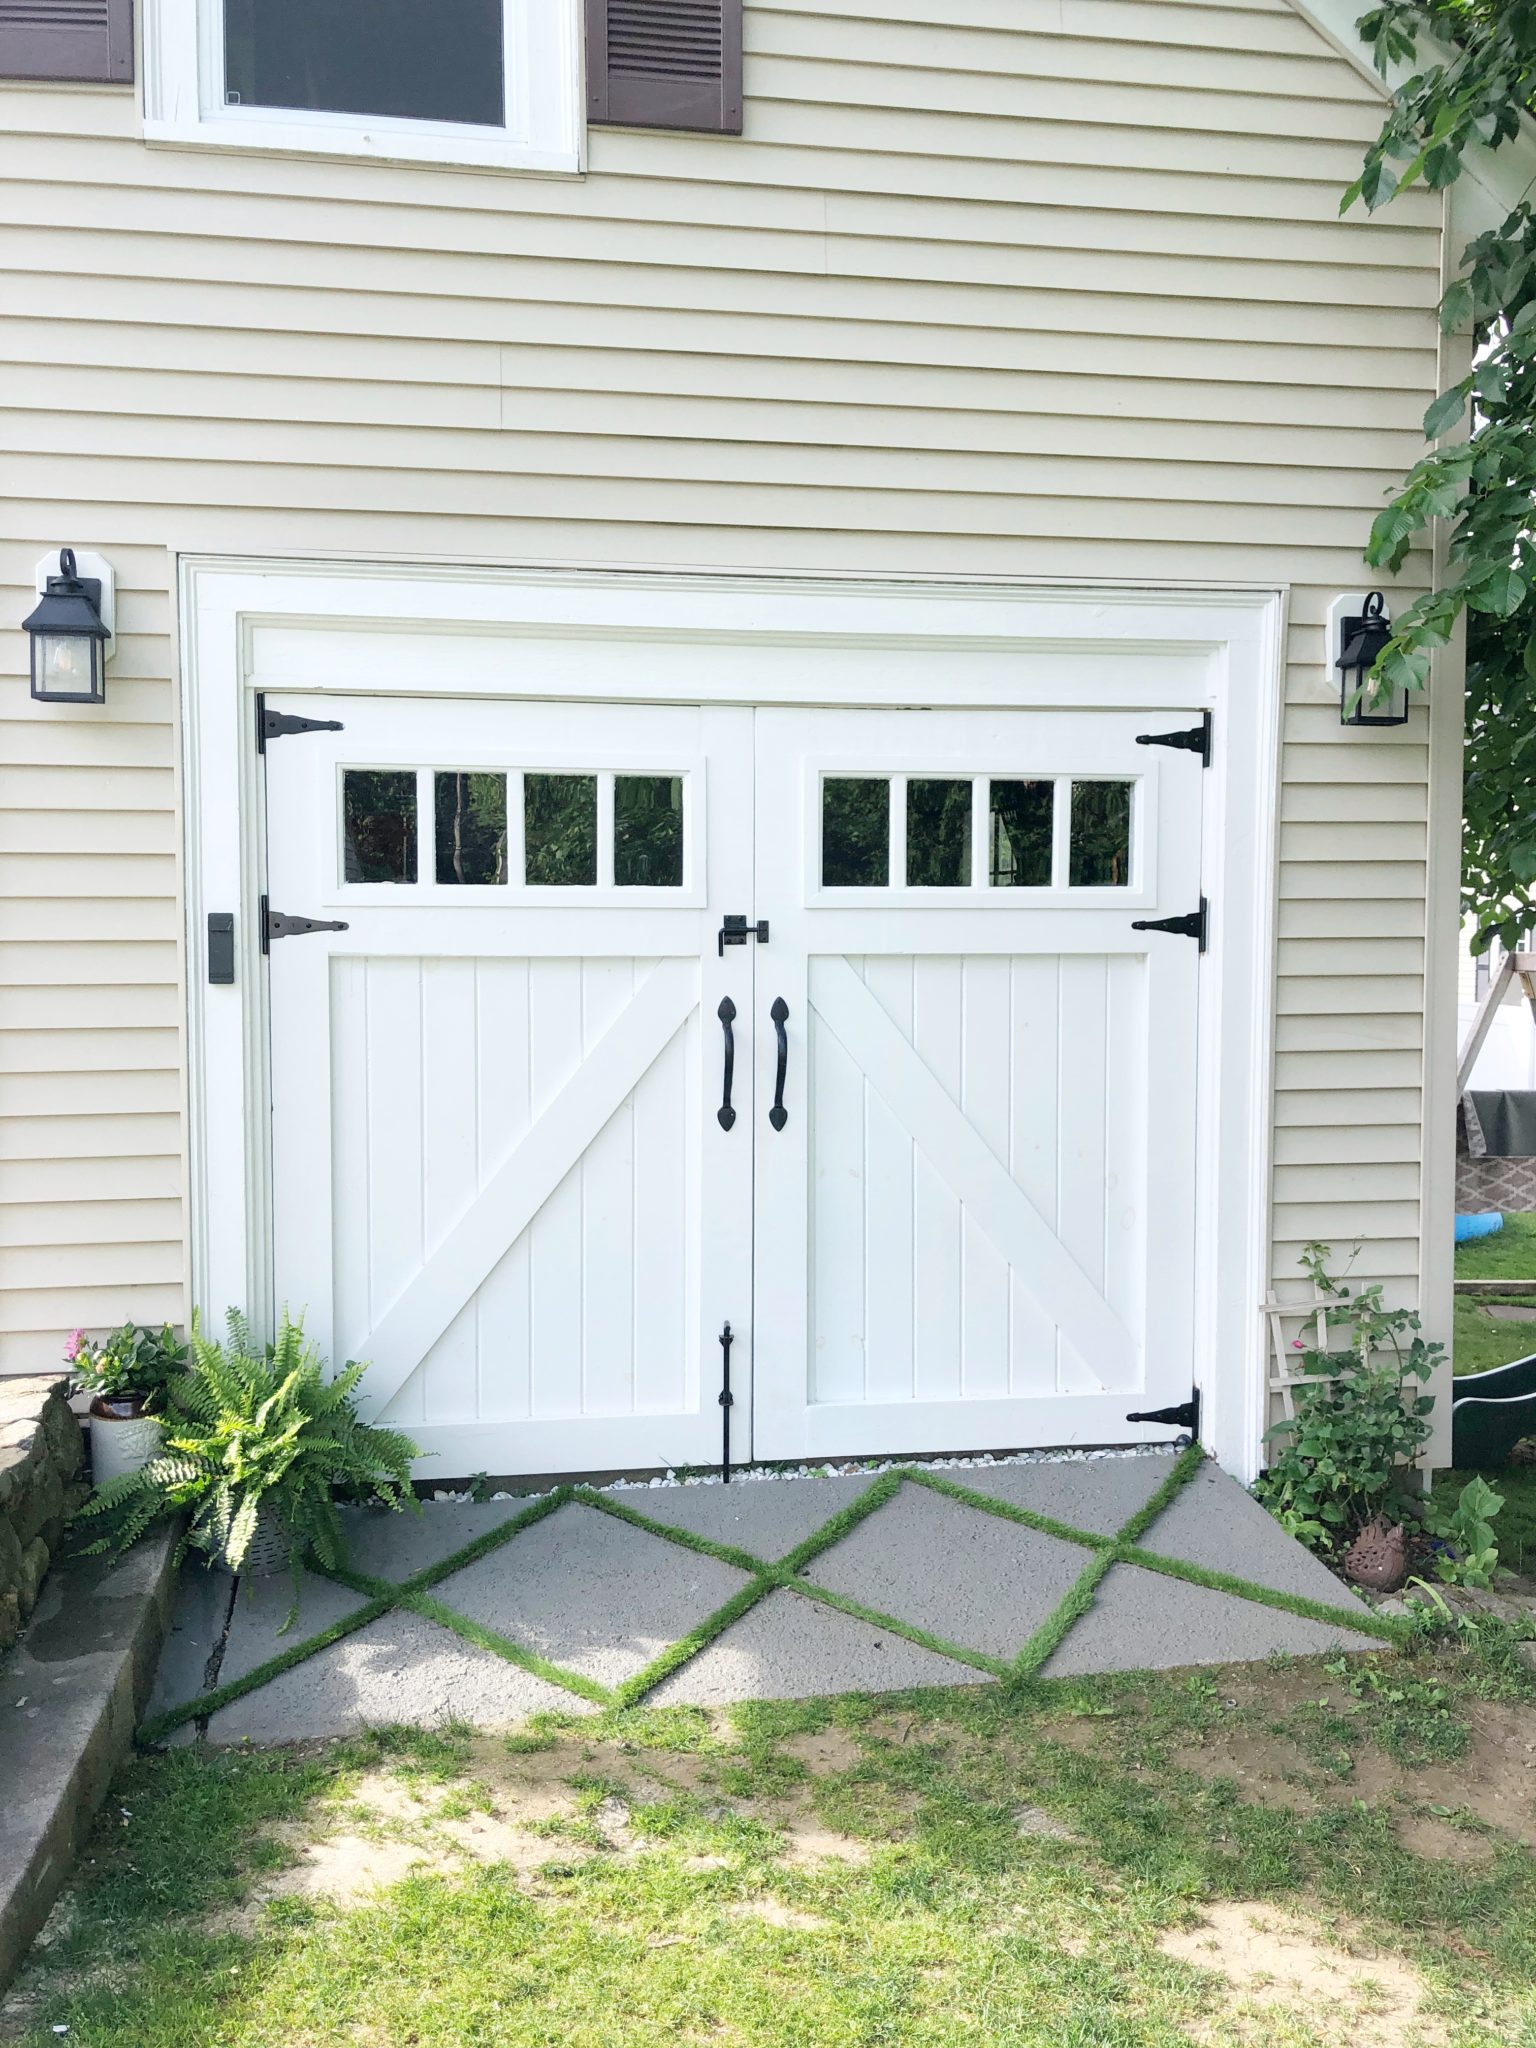 Can I add a garage door opener to a sliding barn door?